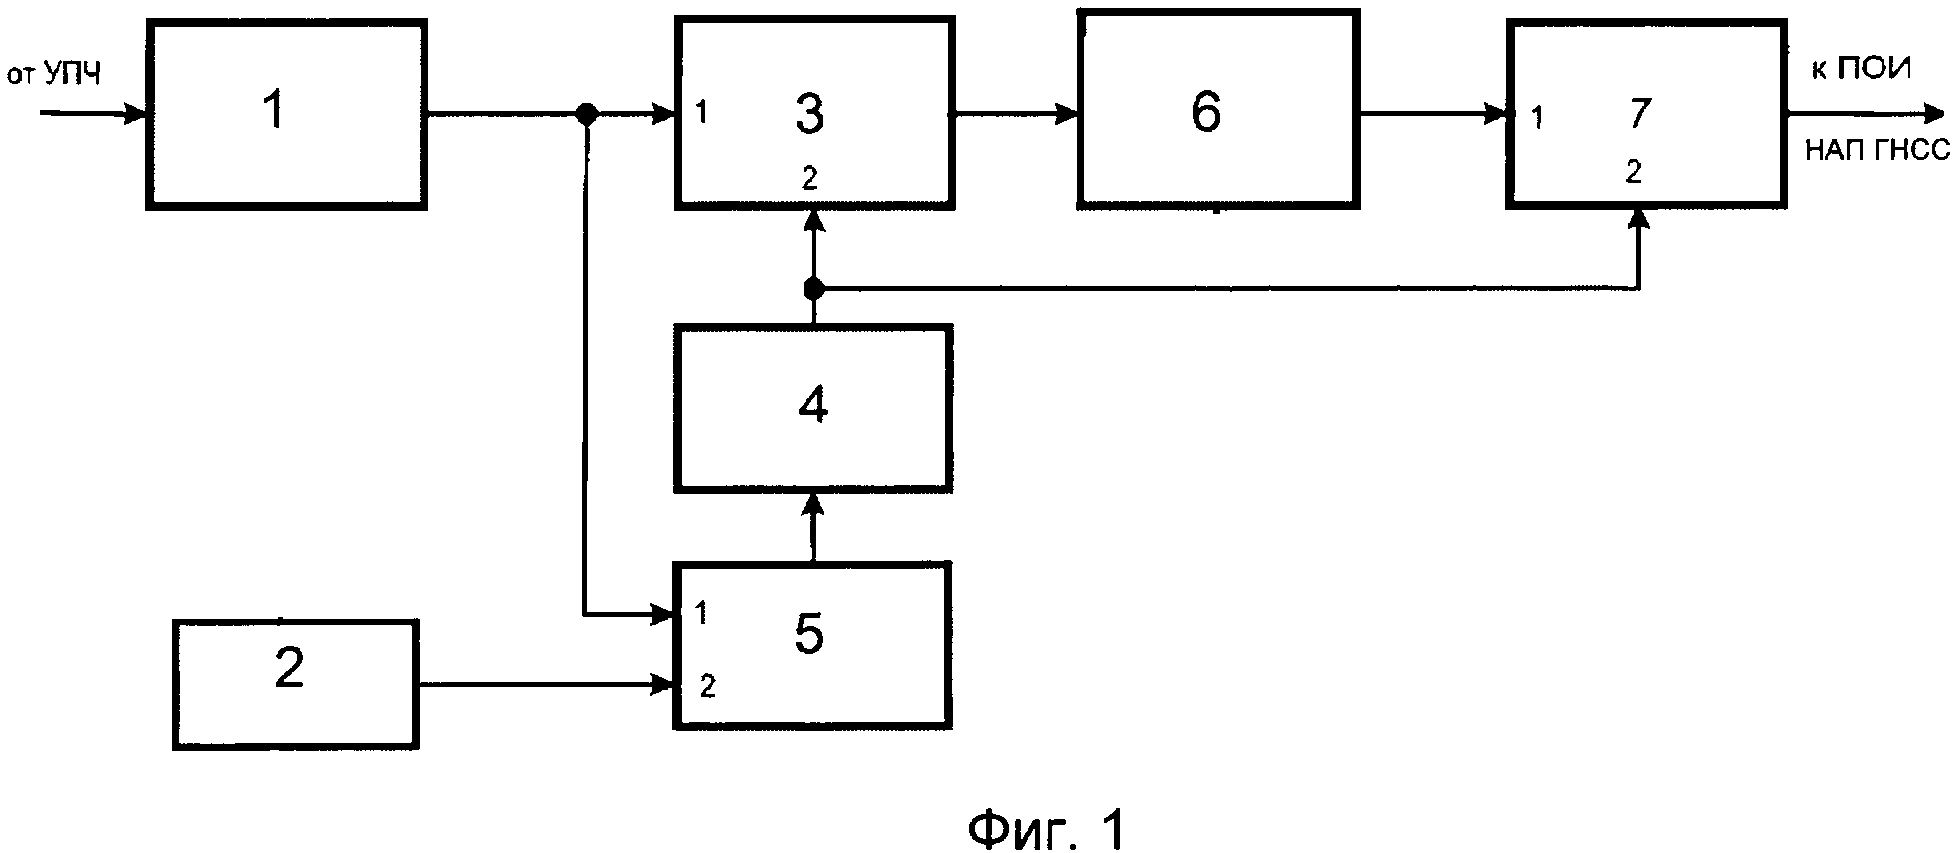 Частотный компенсатор для обеспечения электромагнитной совместимости отечественного передатчика радиопомех НАП ГНСС противника с отечественной НАП ГНСС при их одновременной работе на совпадающих частотах